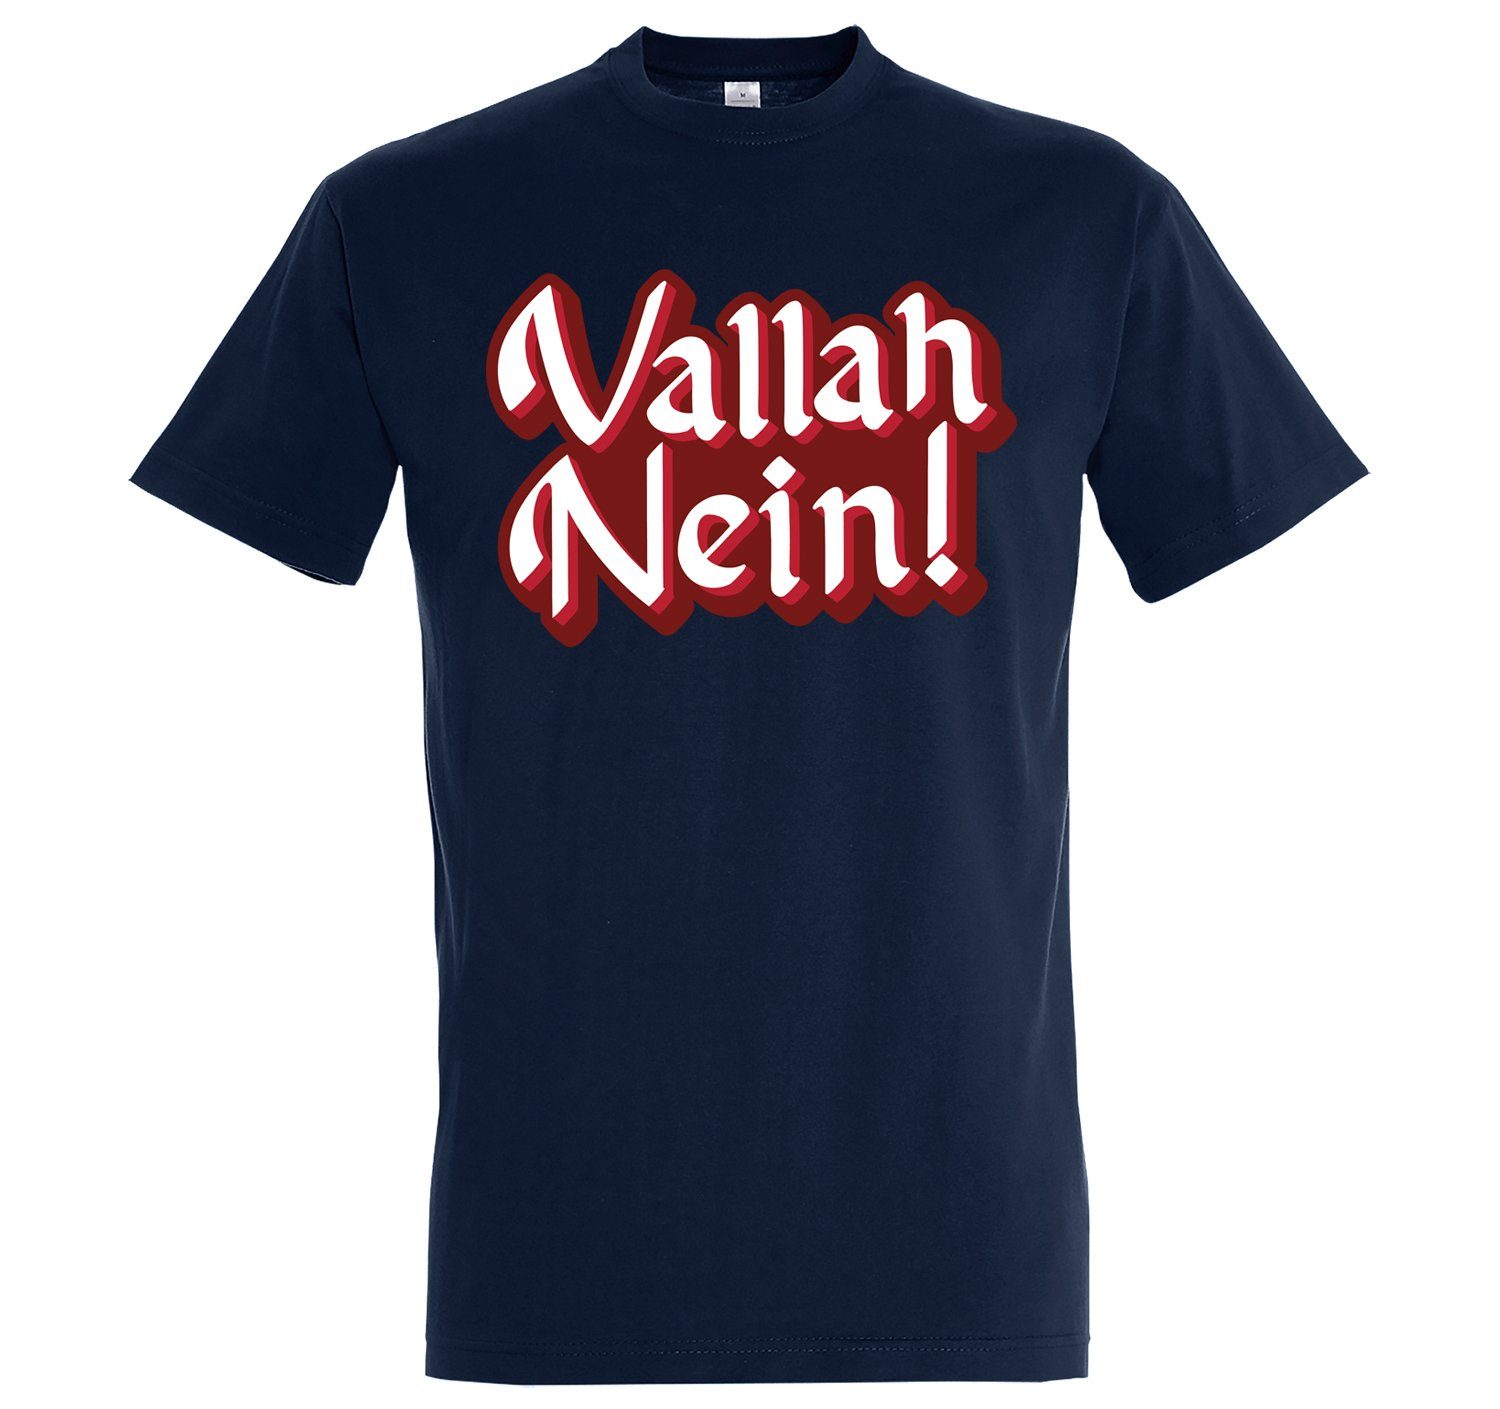 Youth Designz T-Shirt "Vallah lustigem Navyblau T-Shirt Spruch Nein" mit Herren